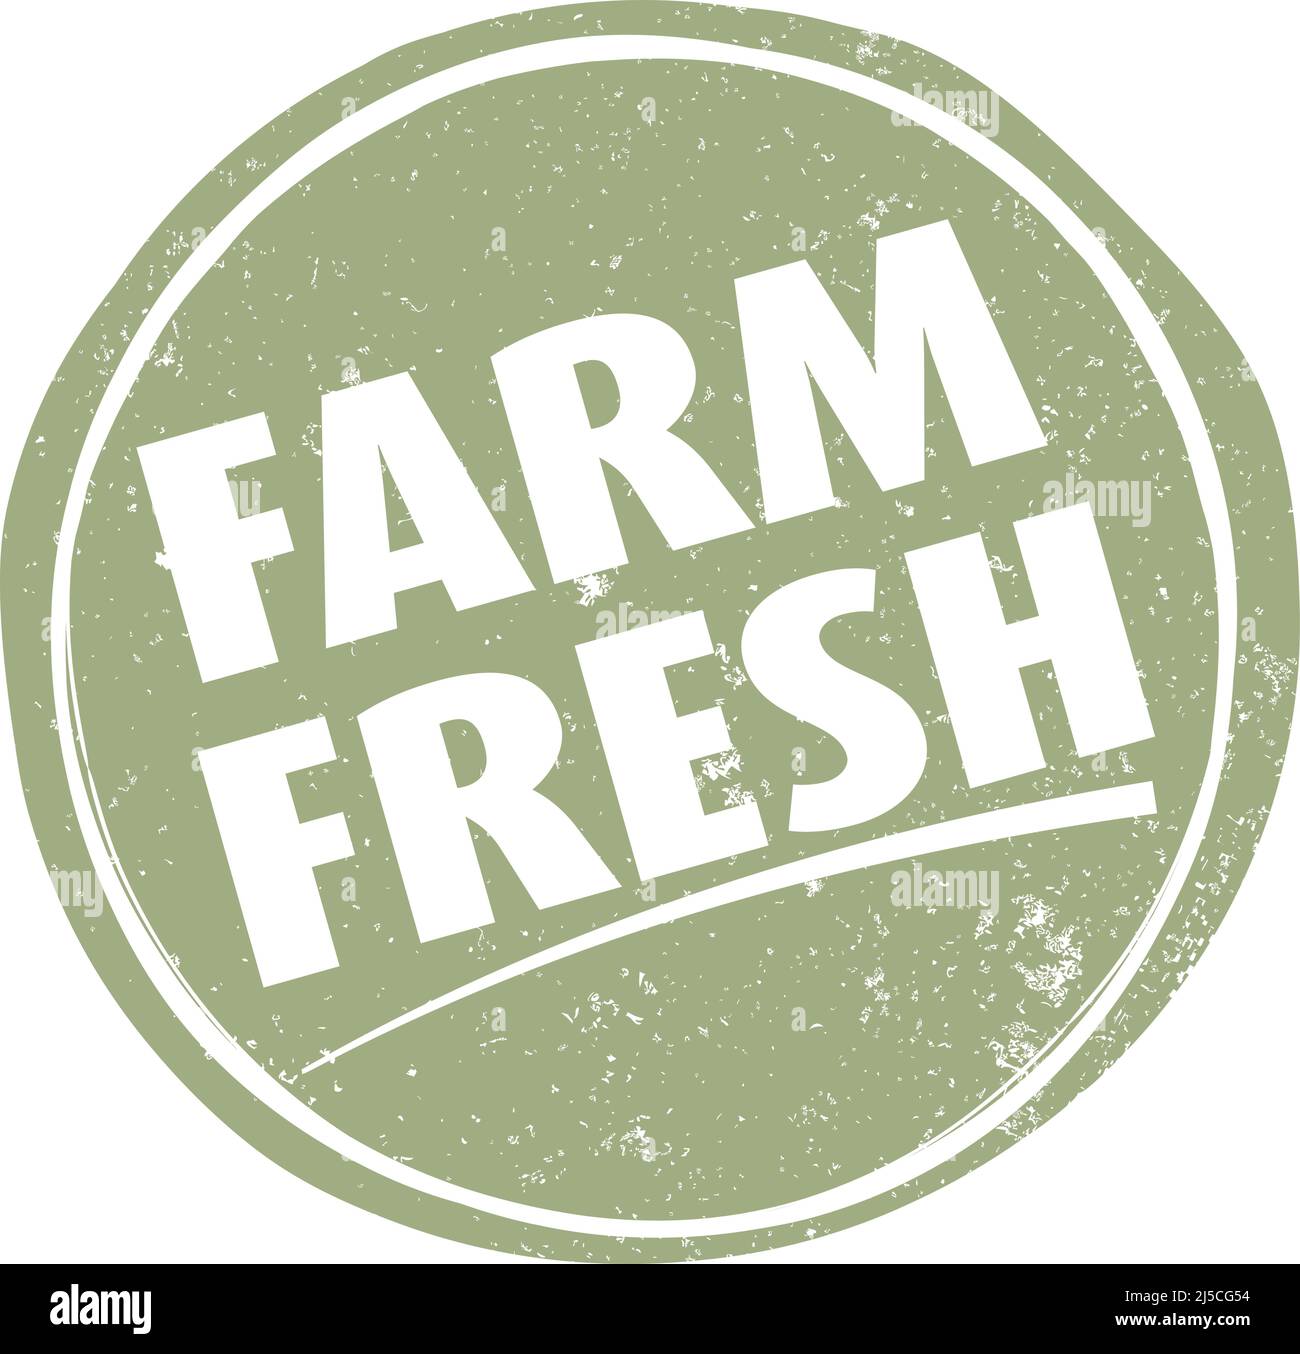 Handgezeichnete kreisförmige grüne FARM FRISCHES Etikett oder Zeichen, Vektor-Illustration Stock Vektor